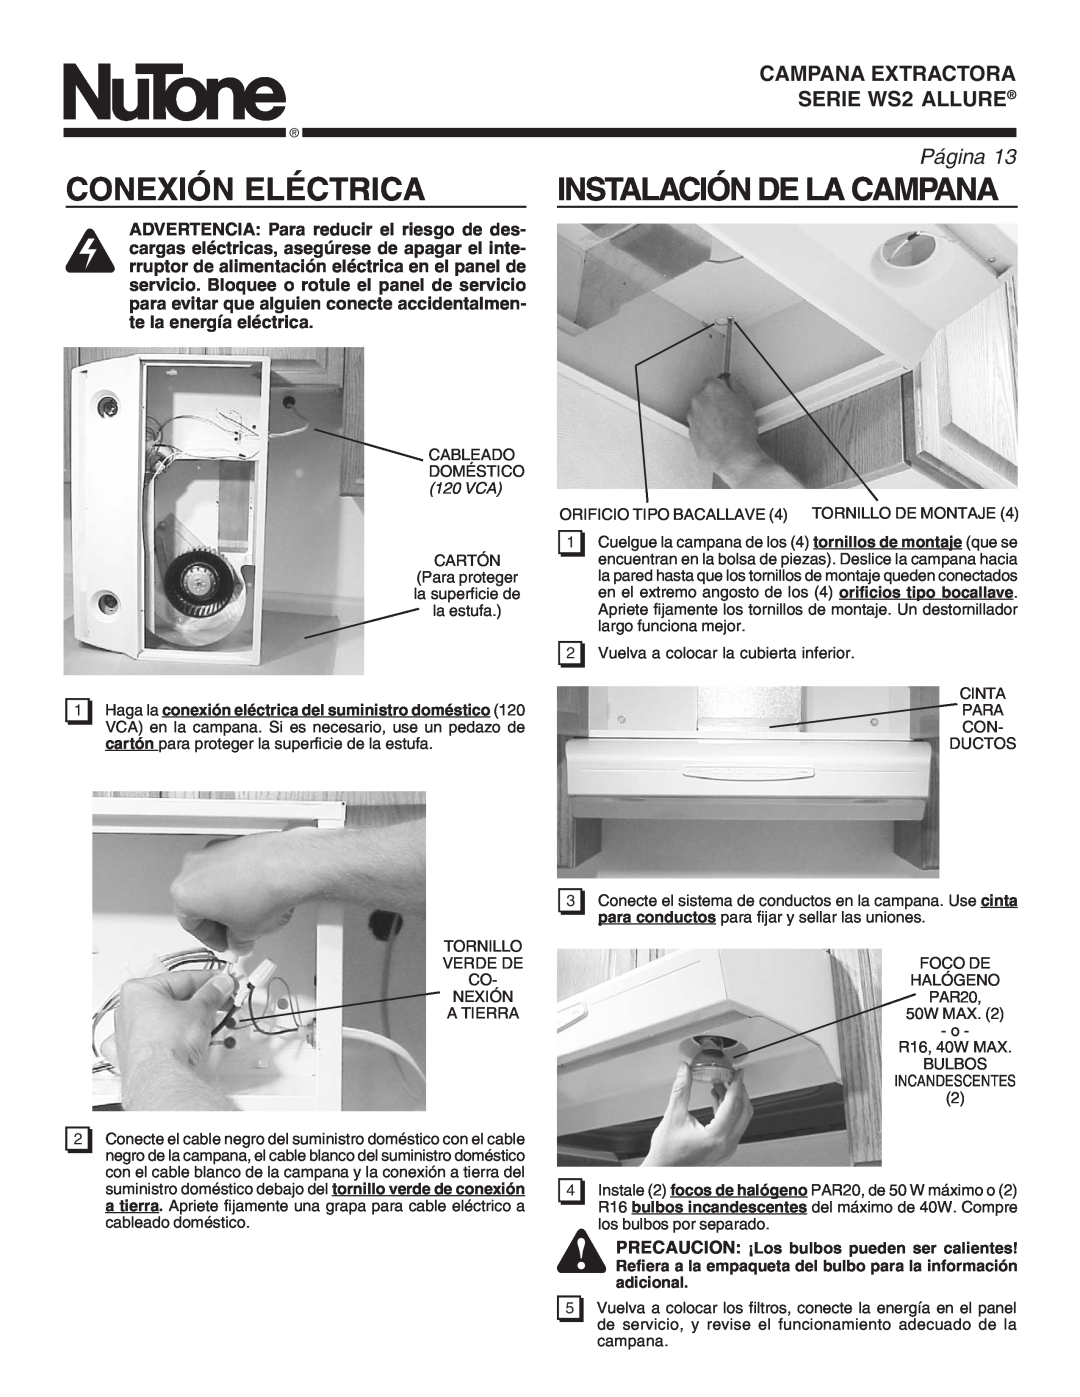 NuTone manual Conexión Eléctrica, Instalación De La Campana, SERIE WS2RANGEALLUREHOOD, PáginaPage, adicional 